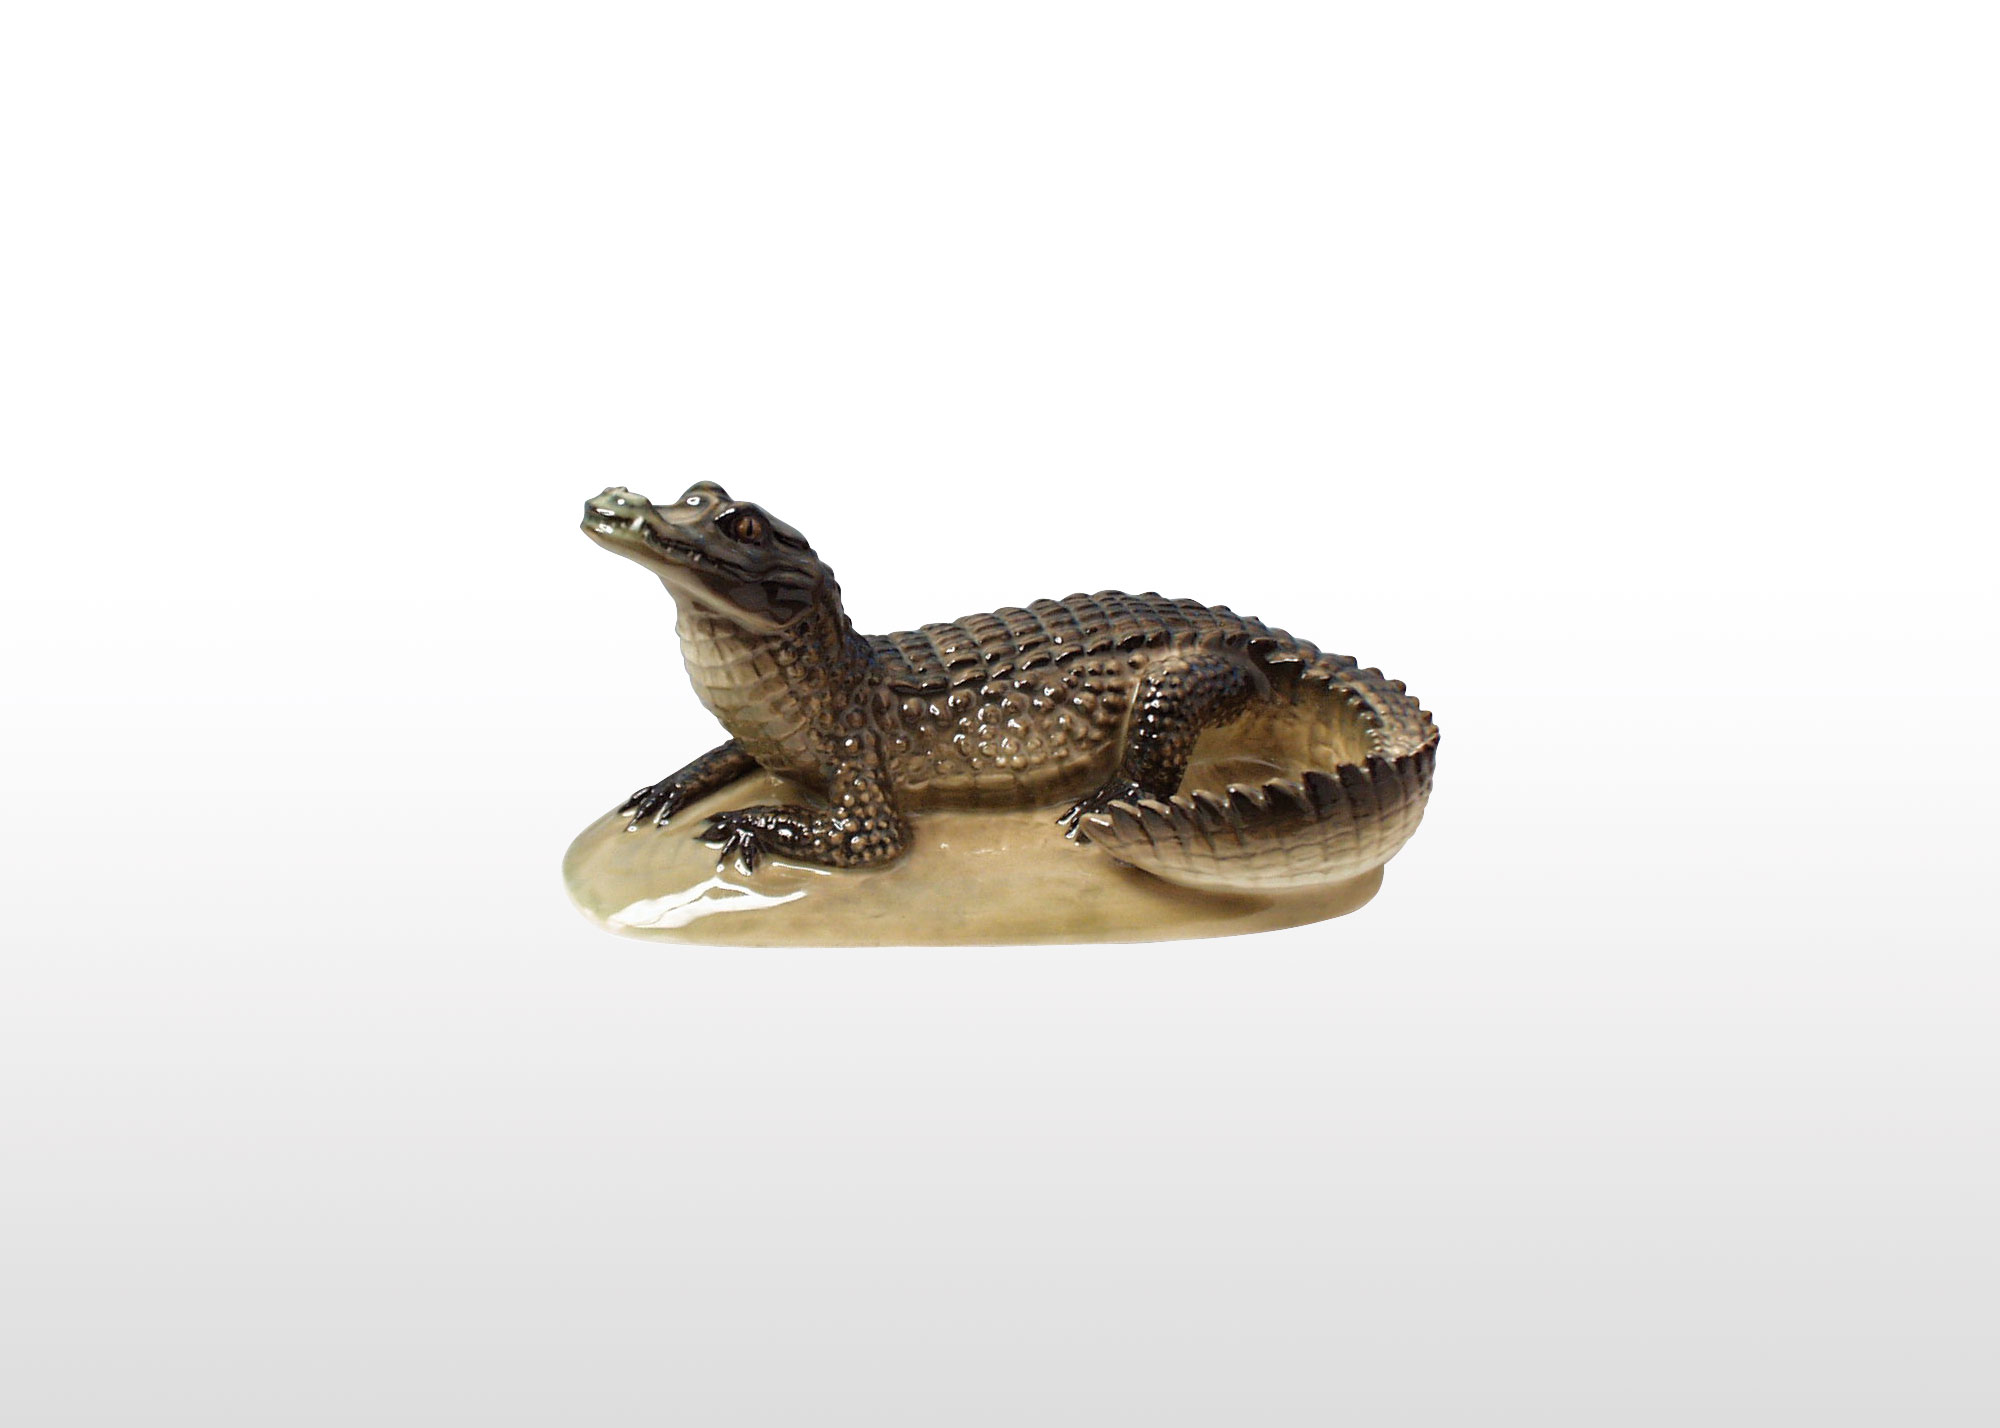 Buy Фарфоровая фигурка «Крокодил» at GoldenCockerel.com